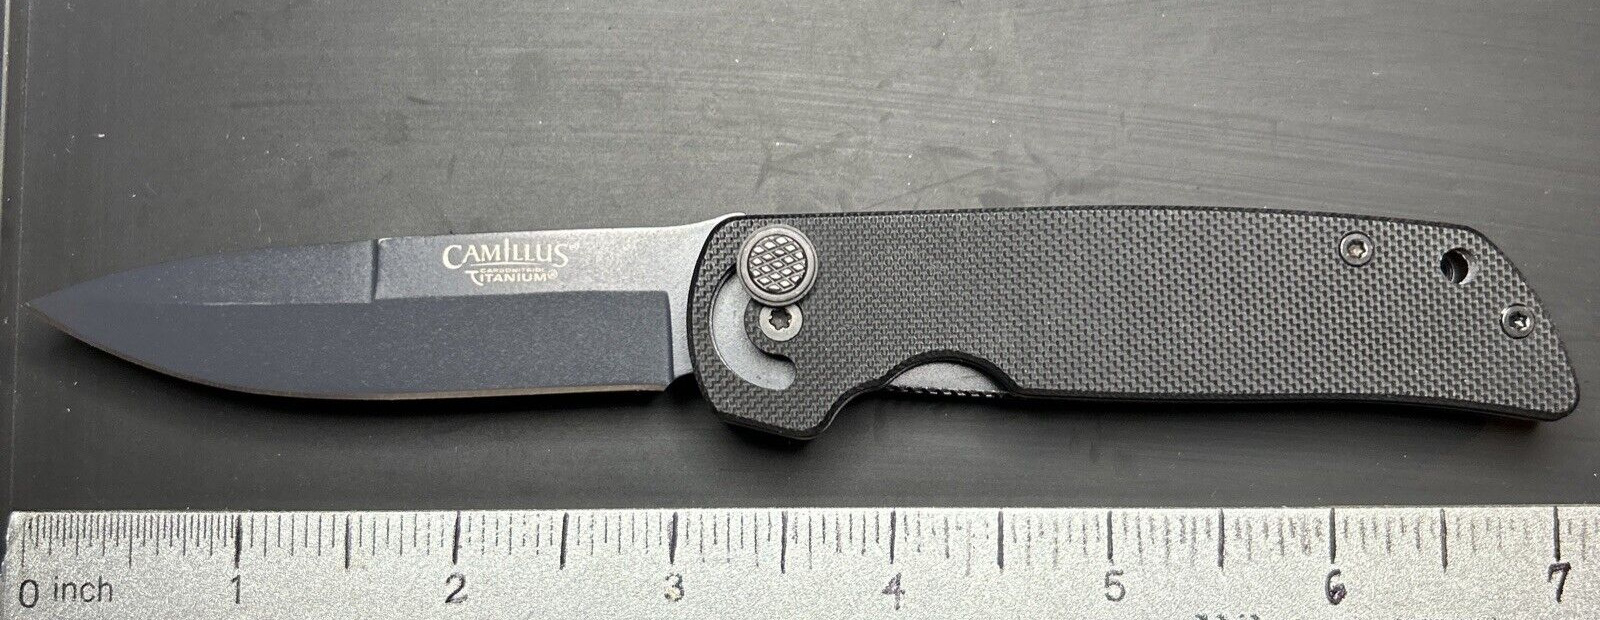 Camillus Titanium Knife Cuda Tactical Liner Lock Black G10 Handles AUS 8 Blade